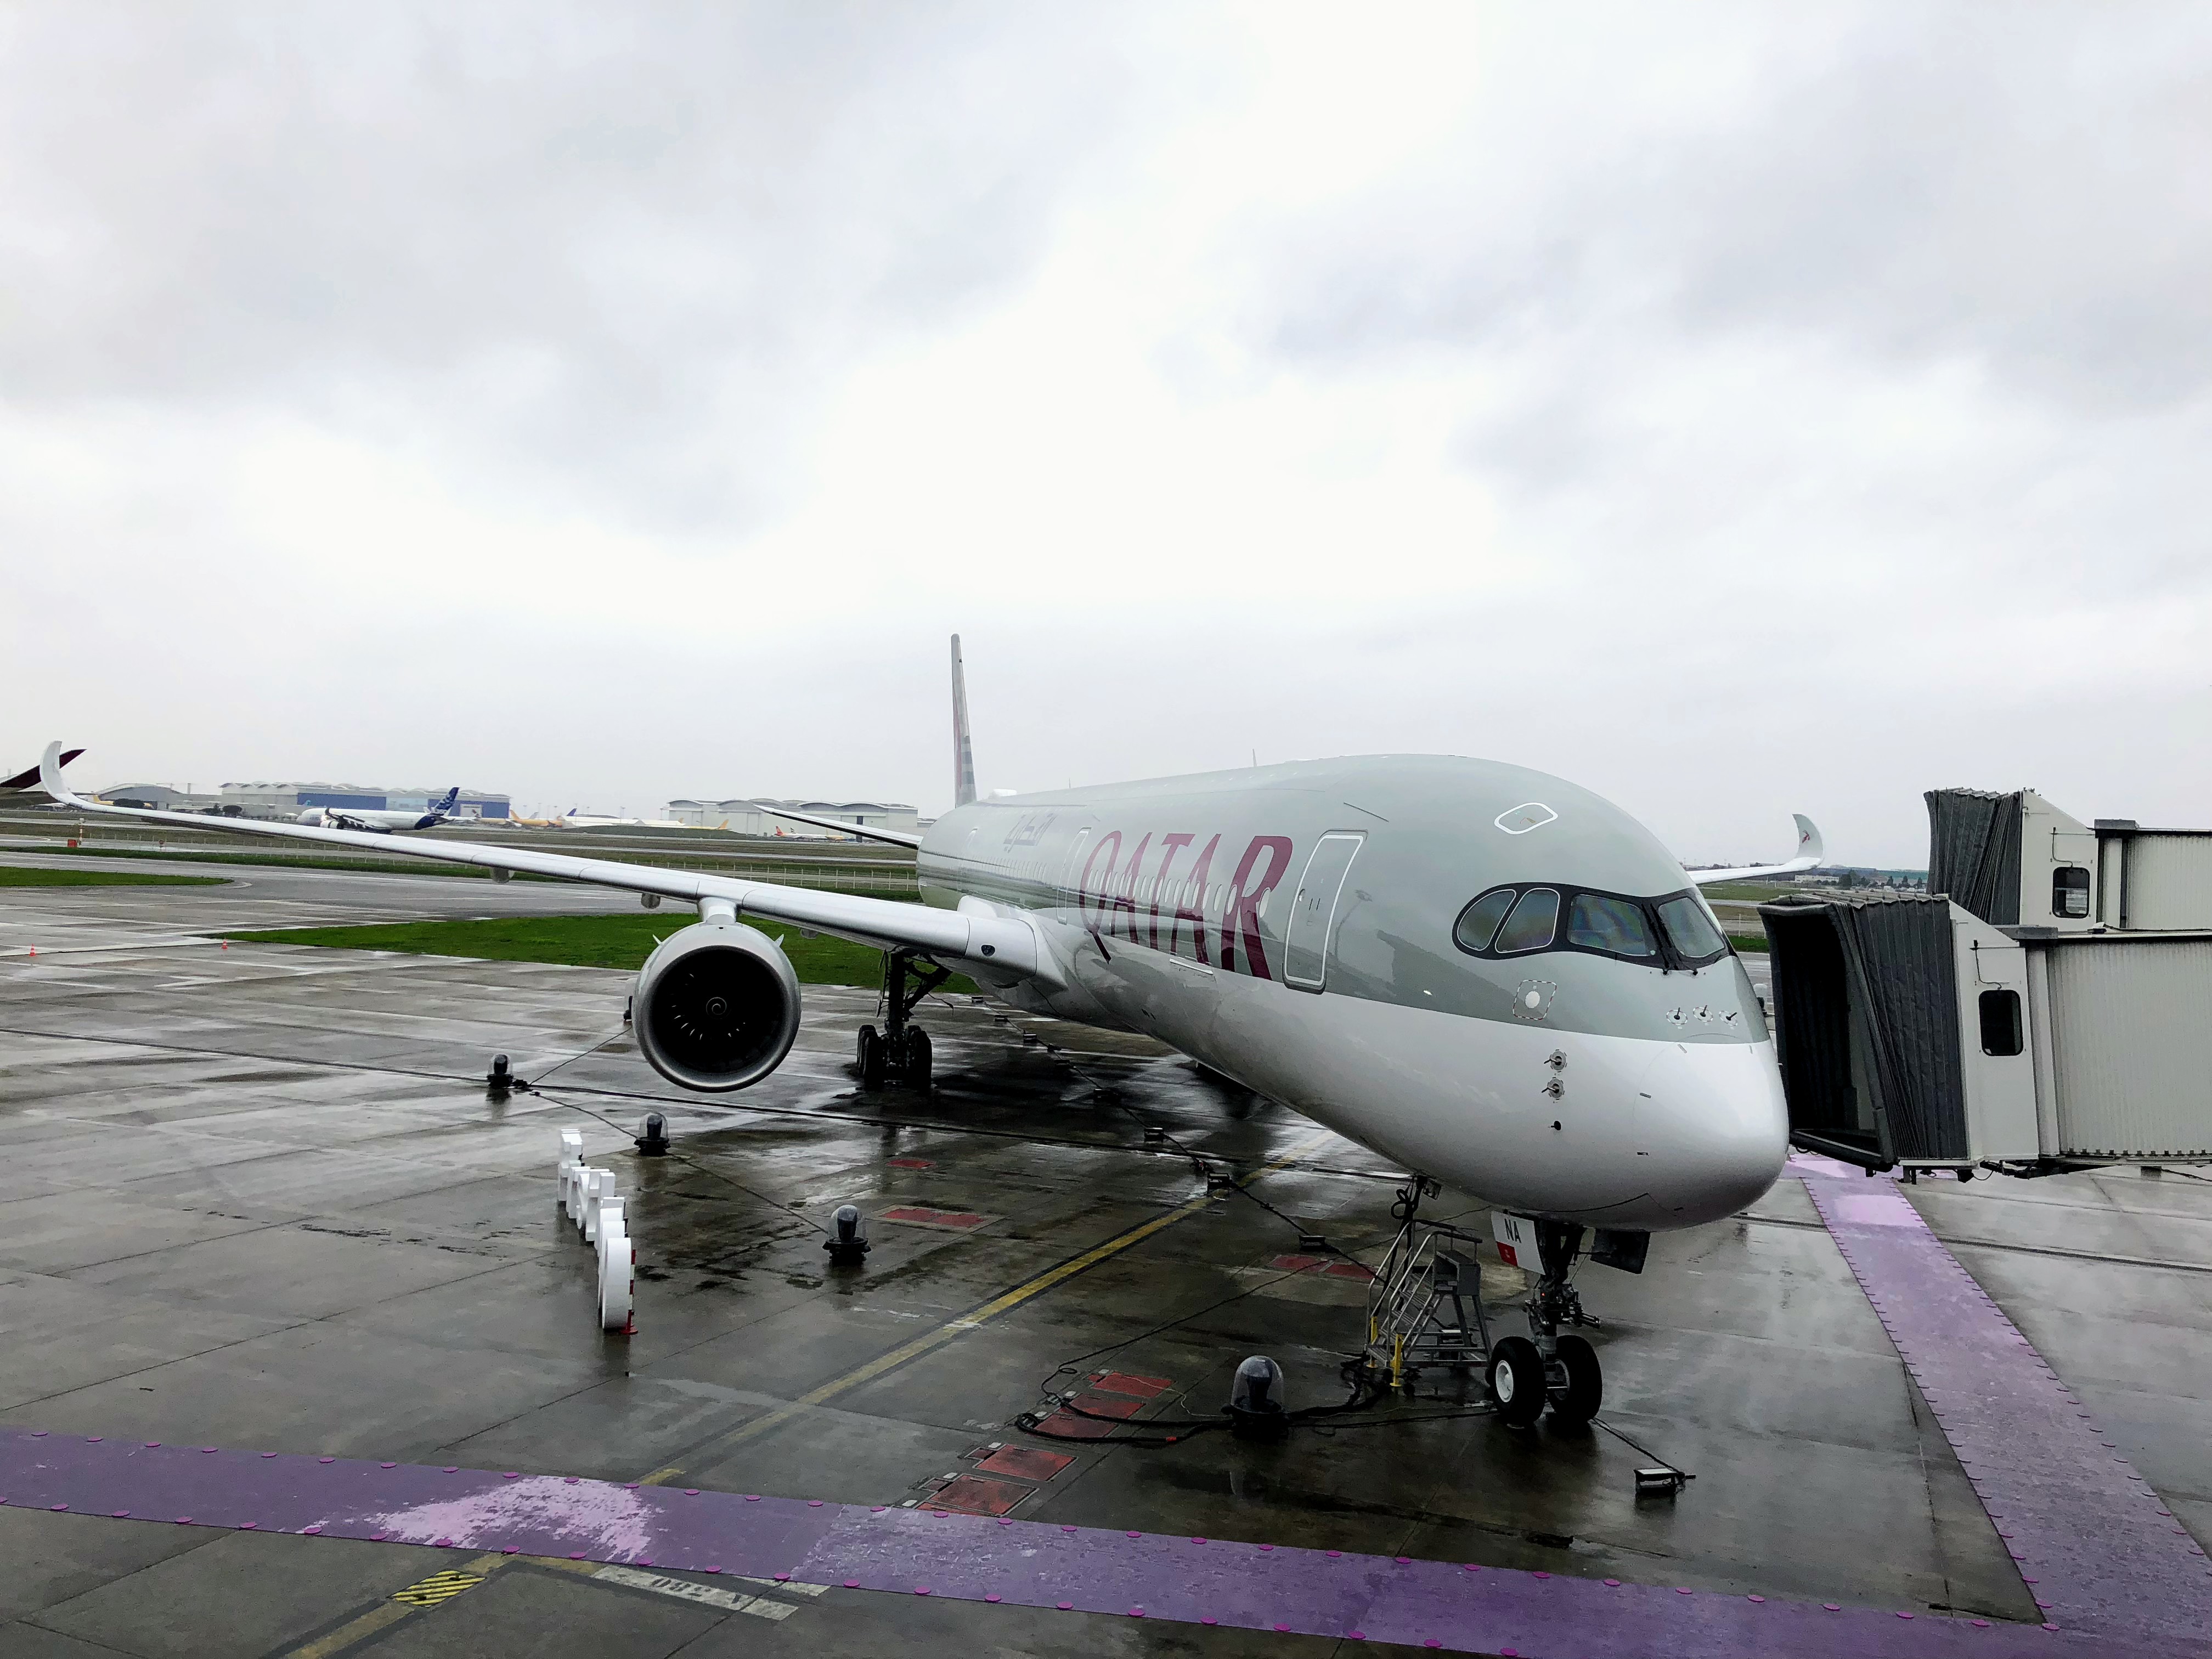 Qatar Airways a350 fleet